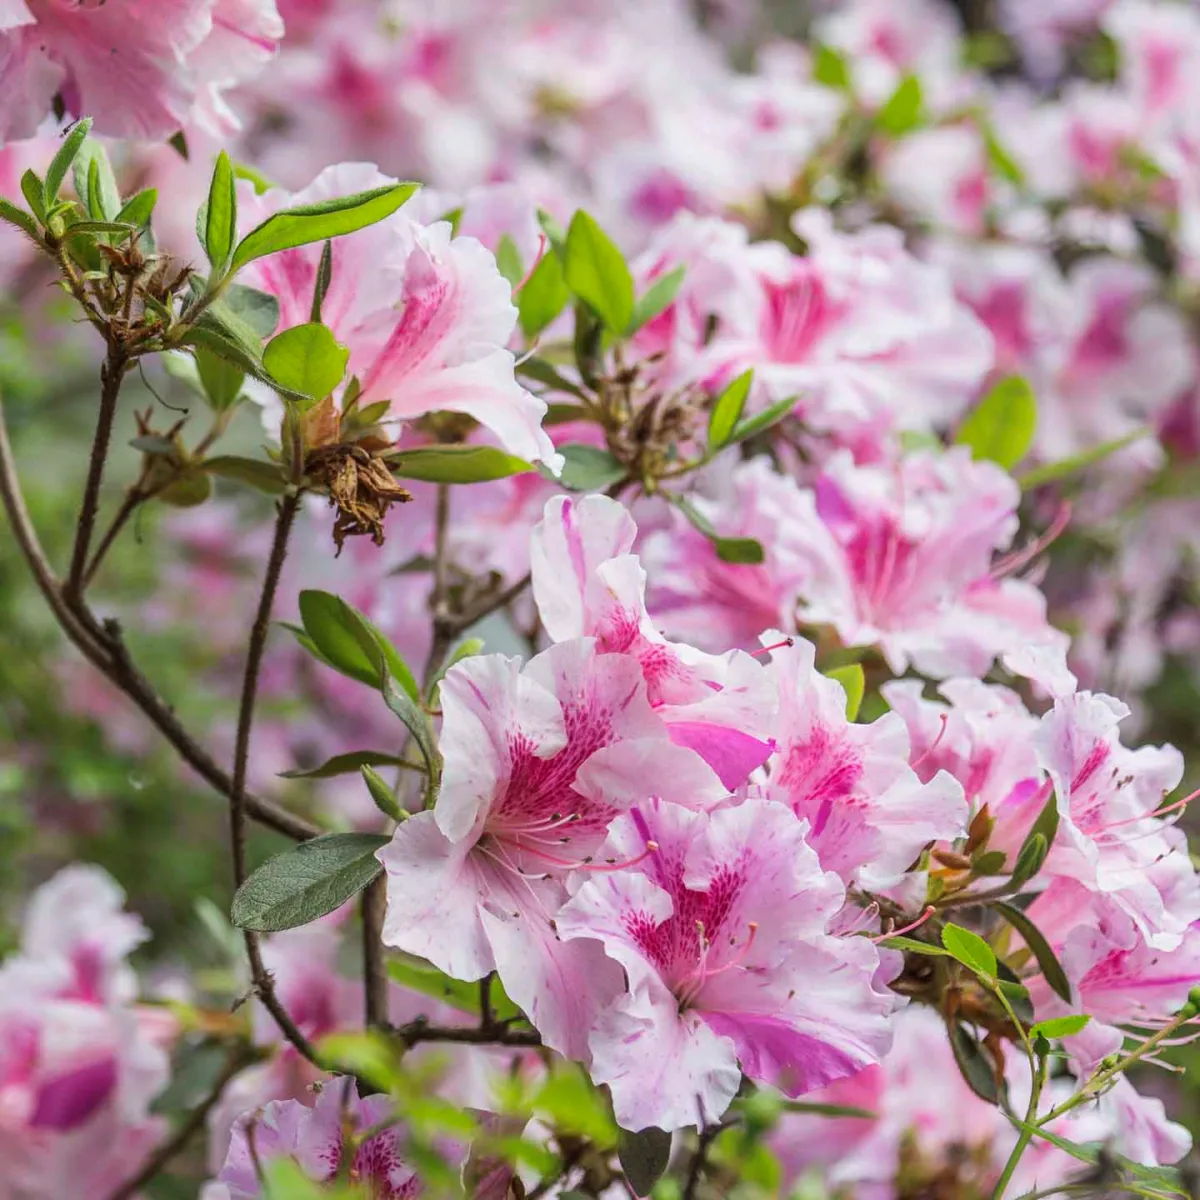 quels soins pour un rhododendron epanoui conseils